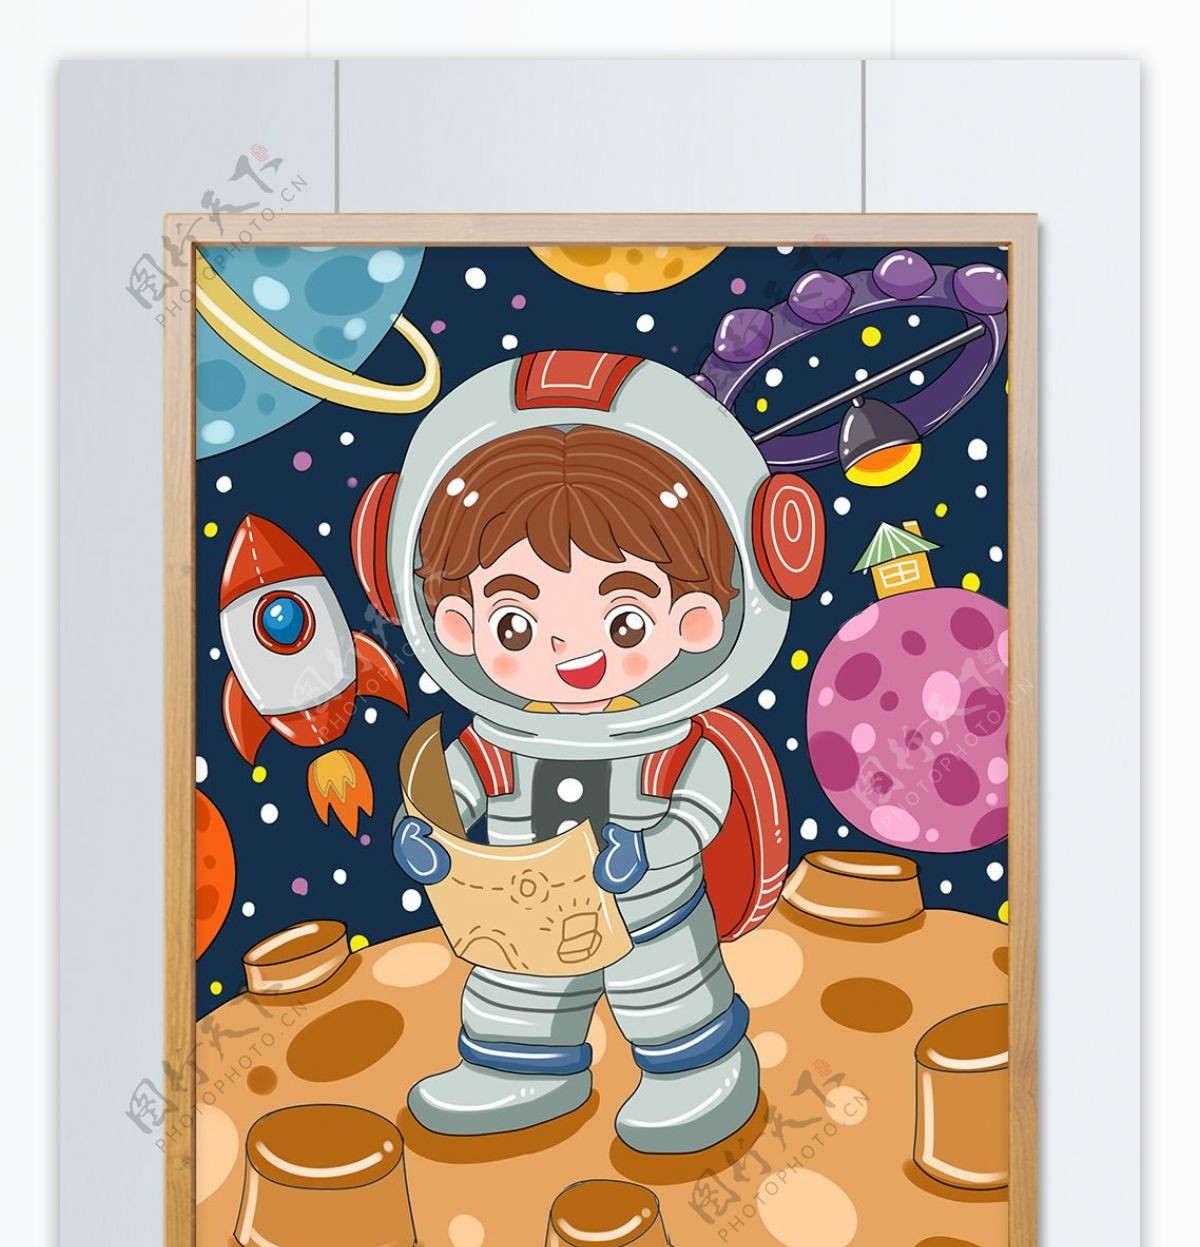 原创月球日小朋友奇妙探险太空儿童插画